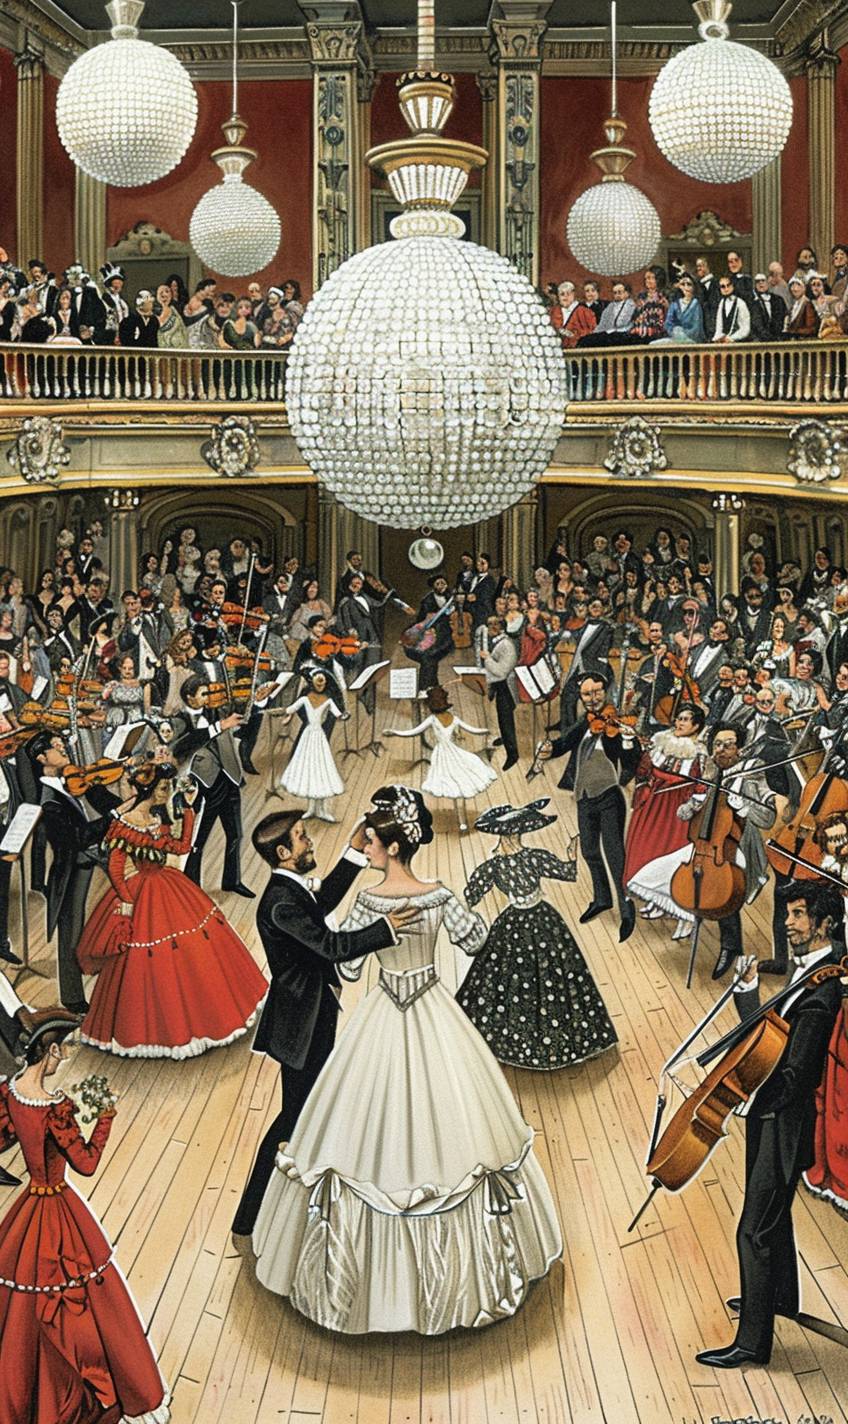 シャンデリアのついたエレガントなヴィクトリア朝のバルルーム、華麗な衣装で踊るカップル、生オーケストラの演奏、豪華で壮大な設定